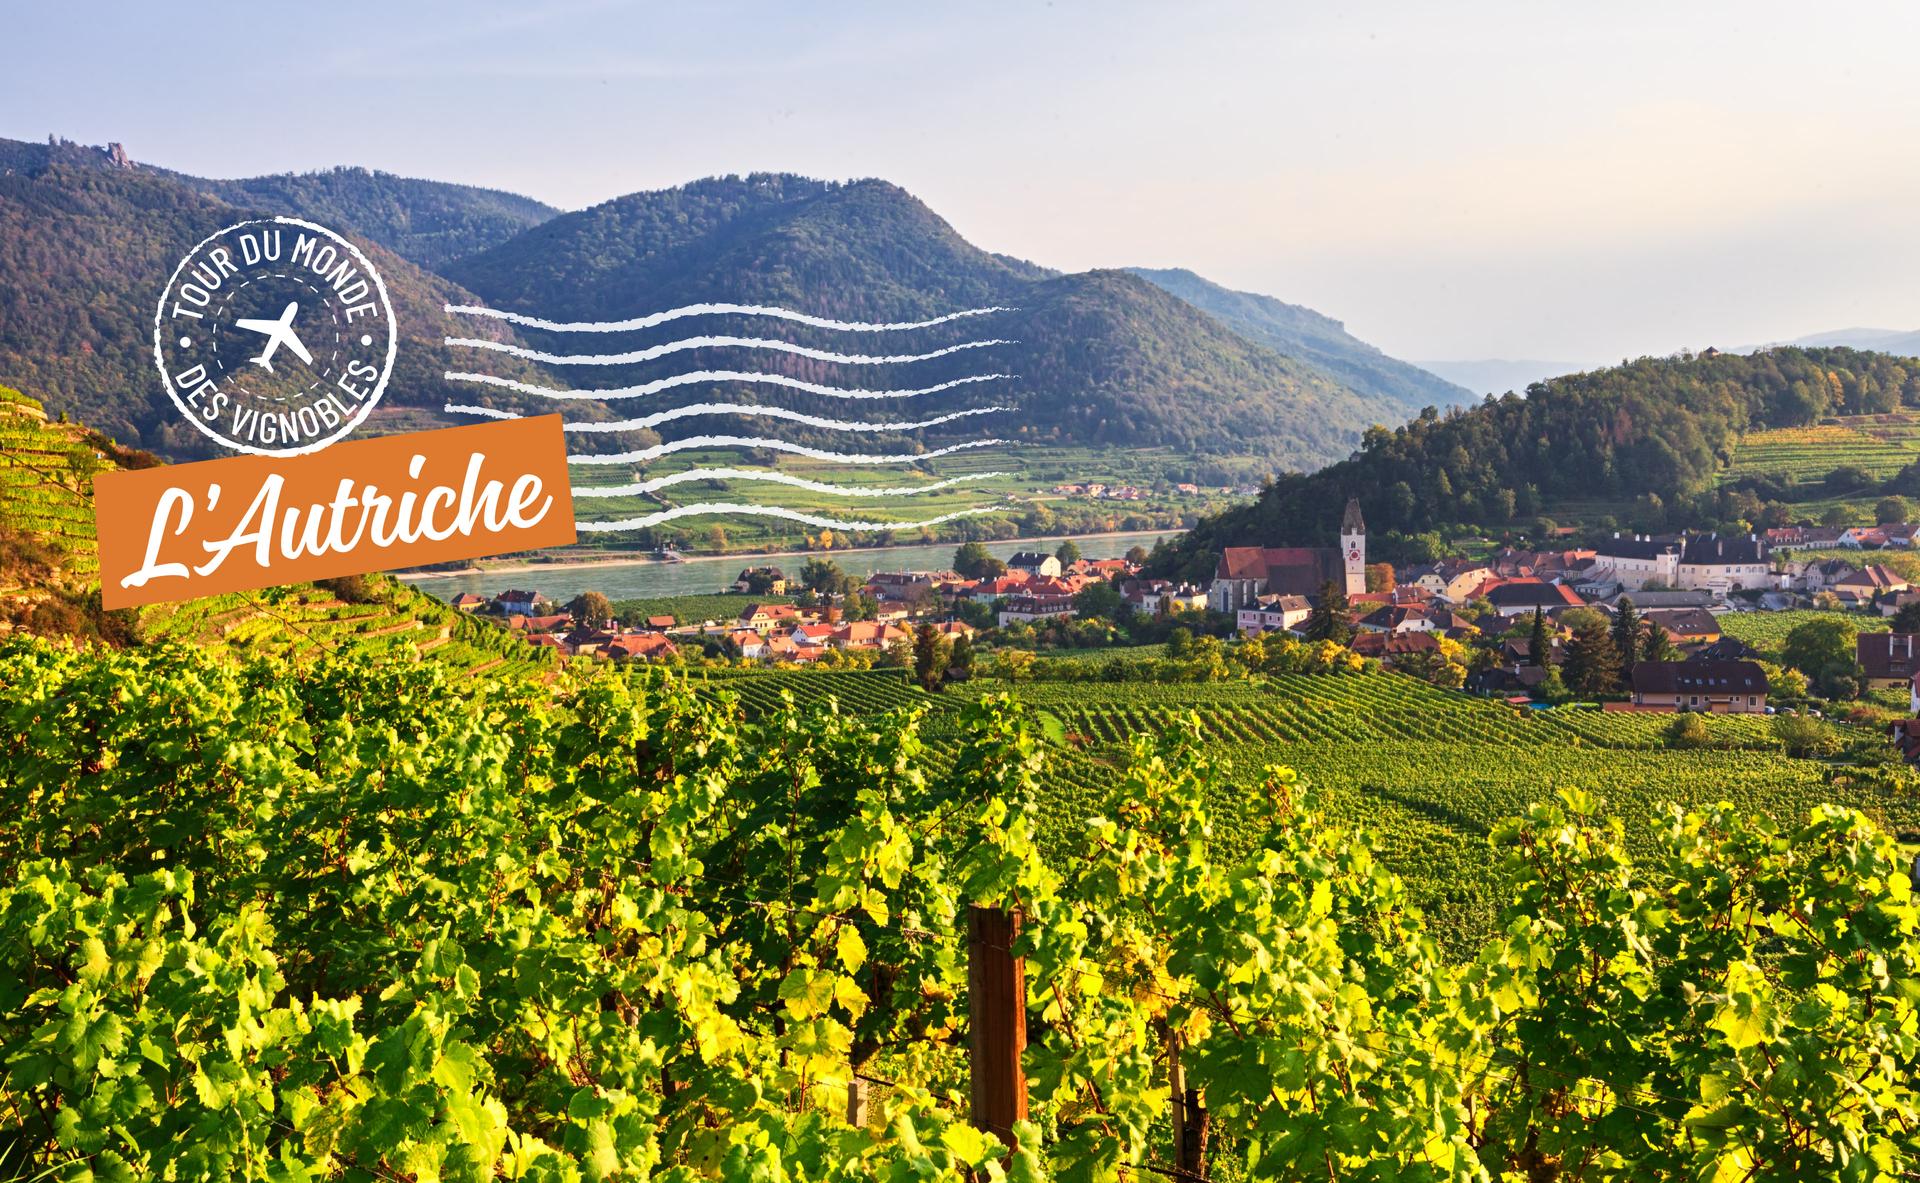 Tour du monde des vignobles : l’Autriche